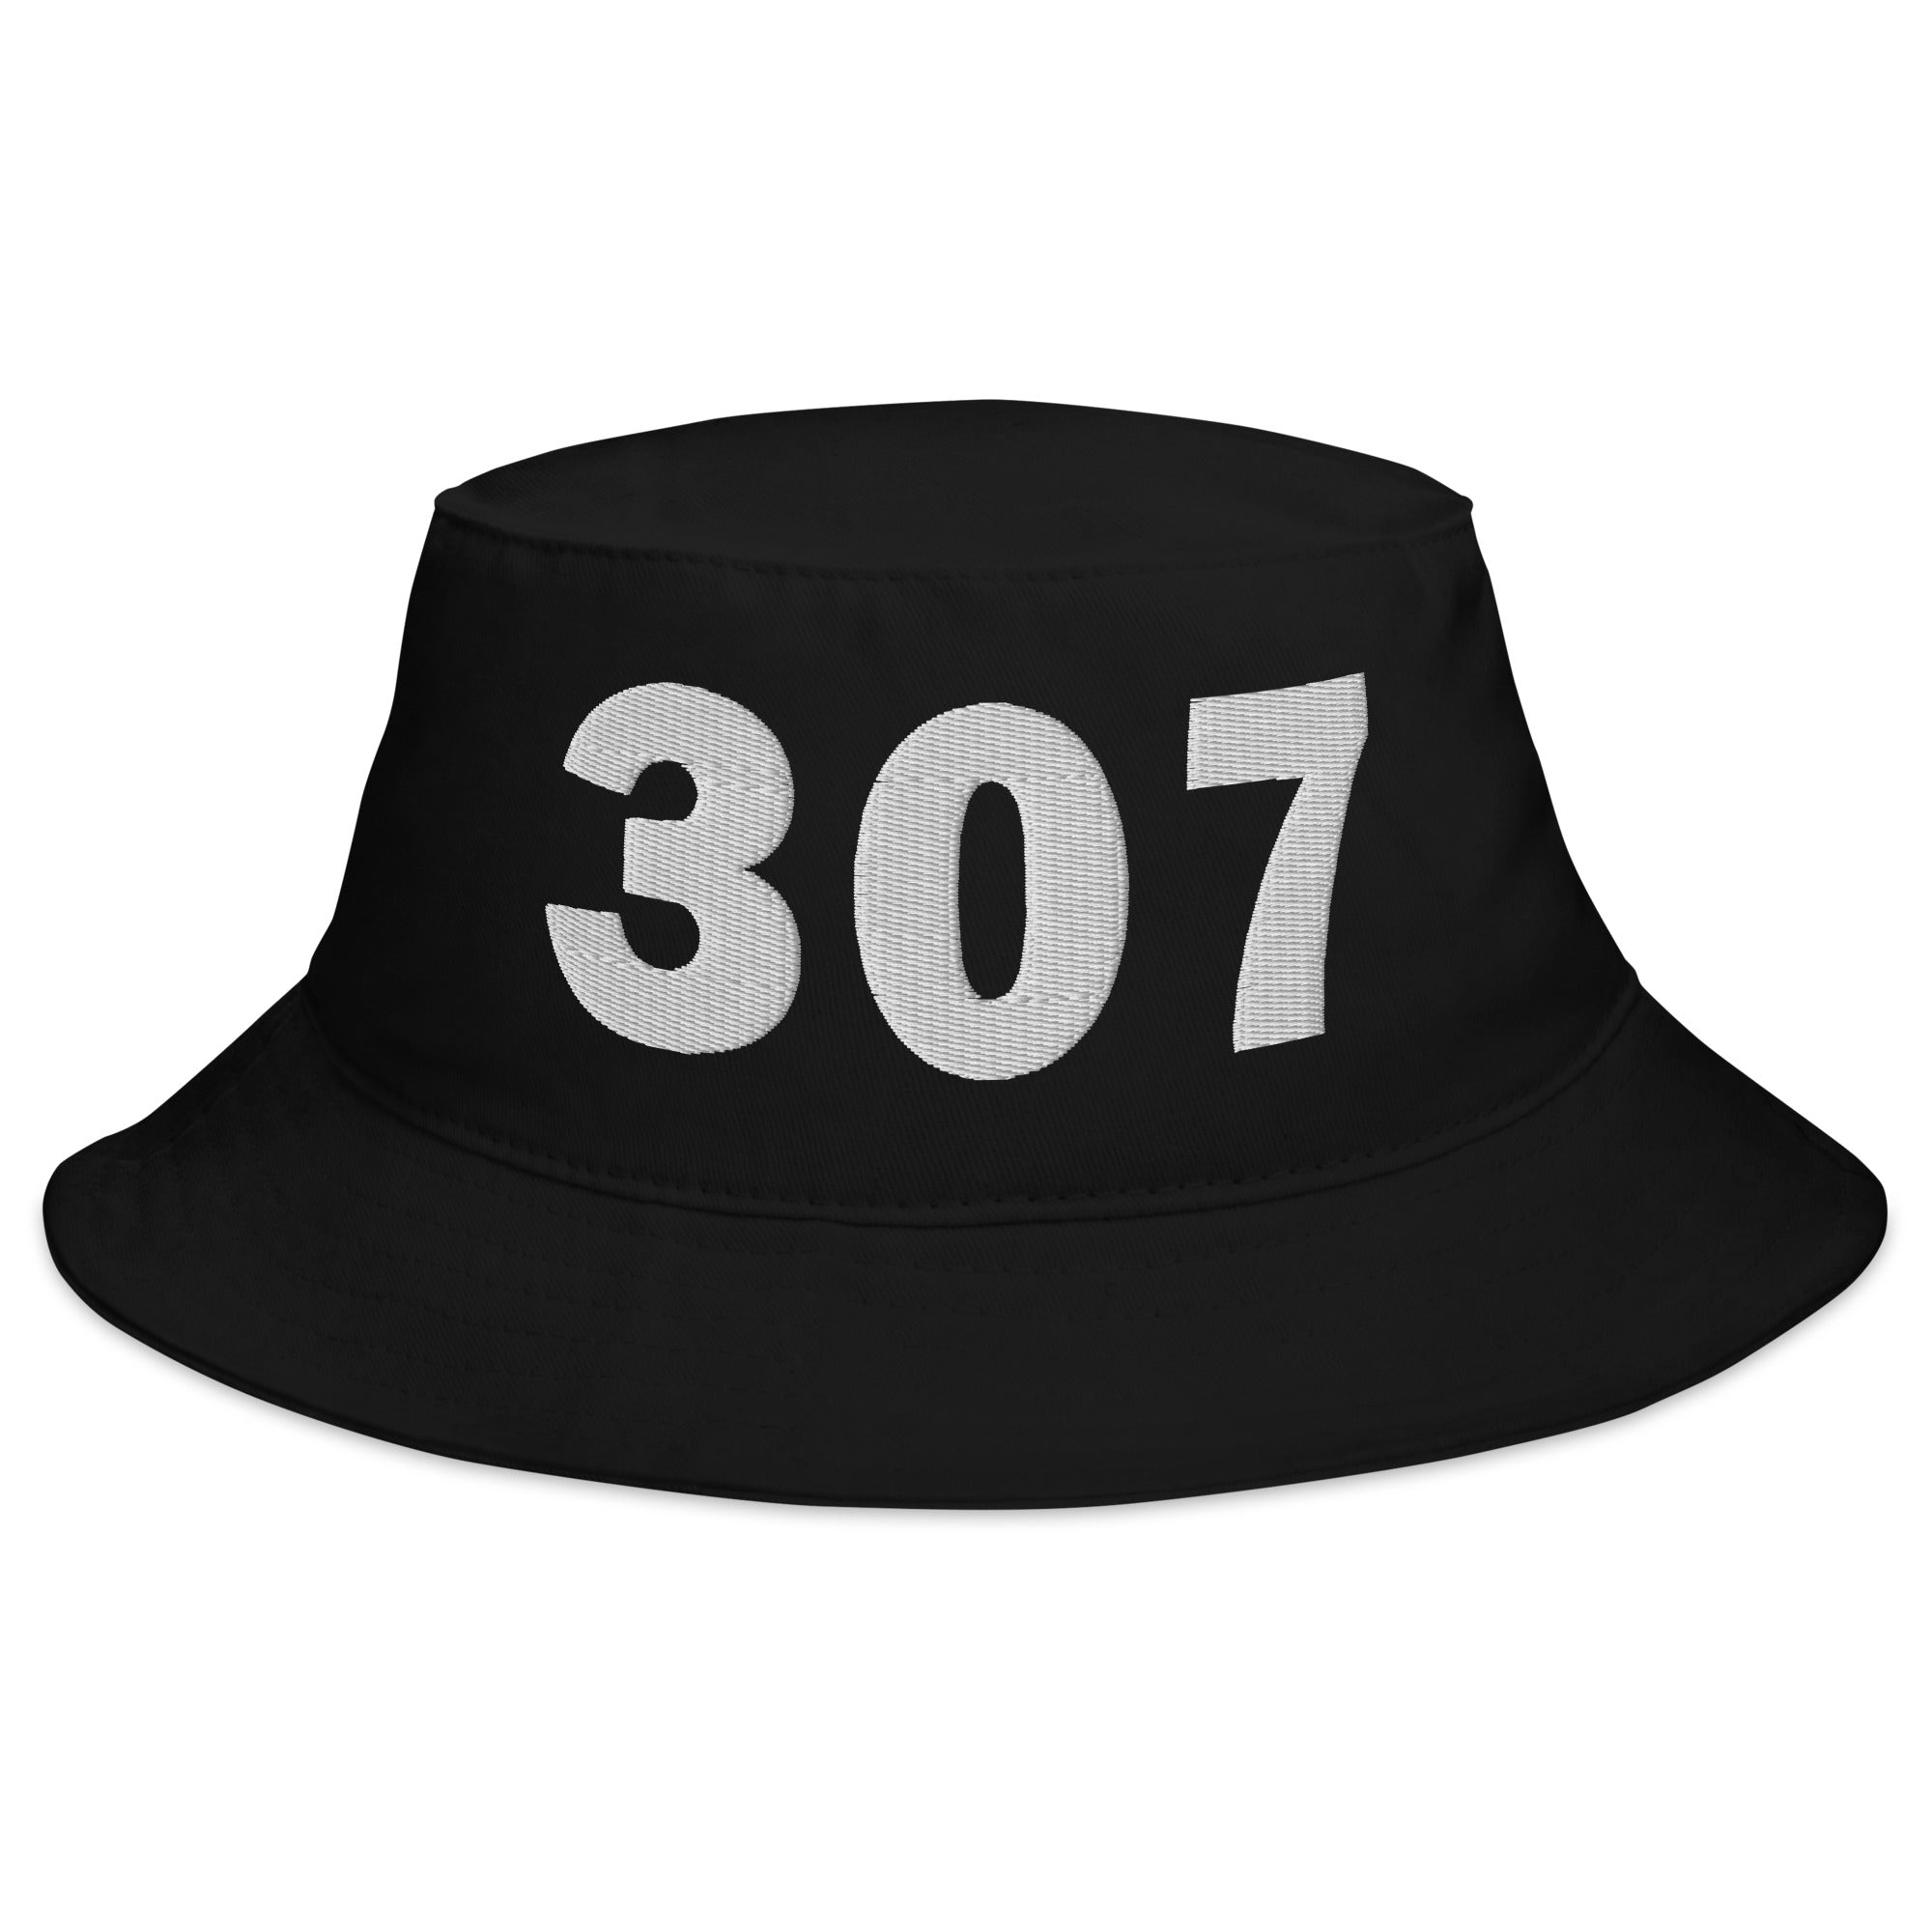 307 Area Code Bucket Hat